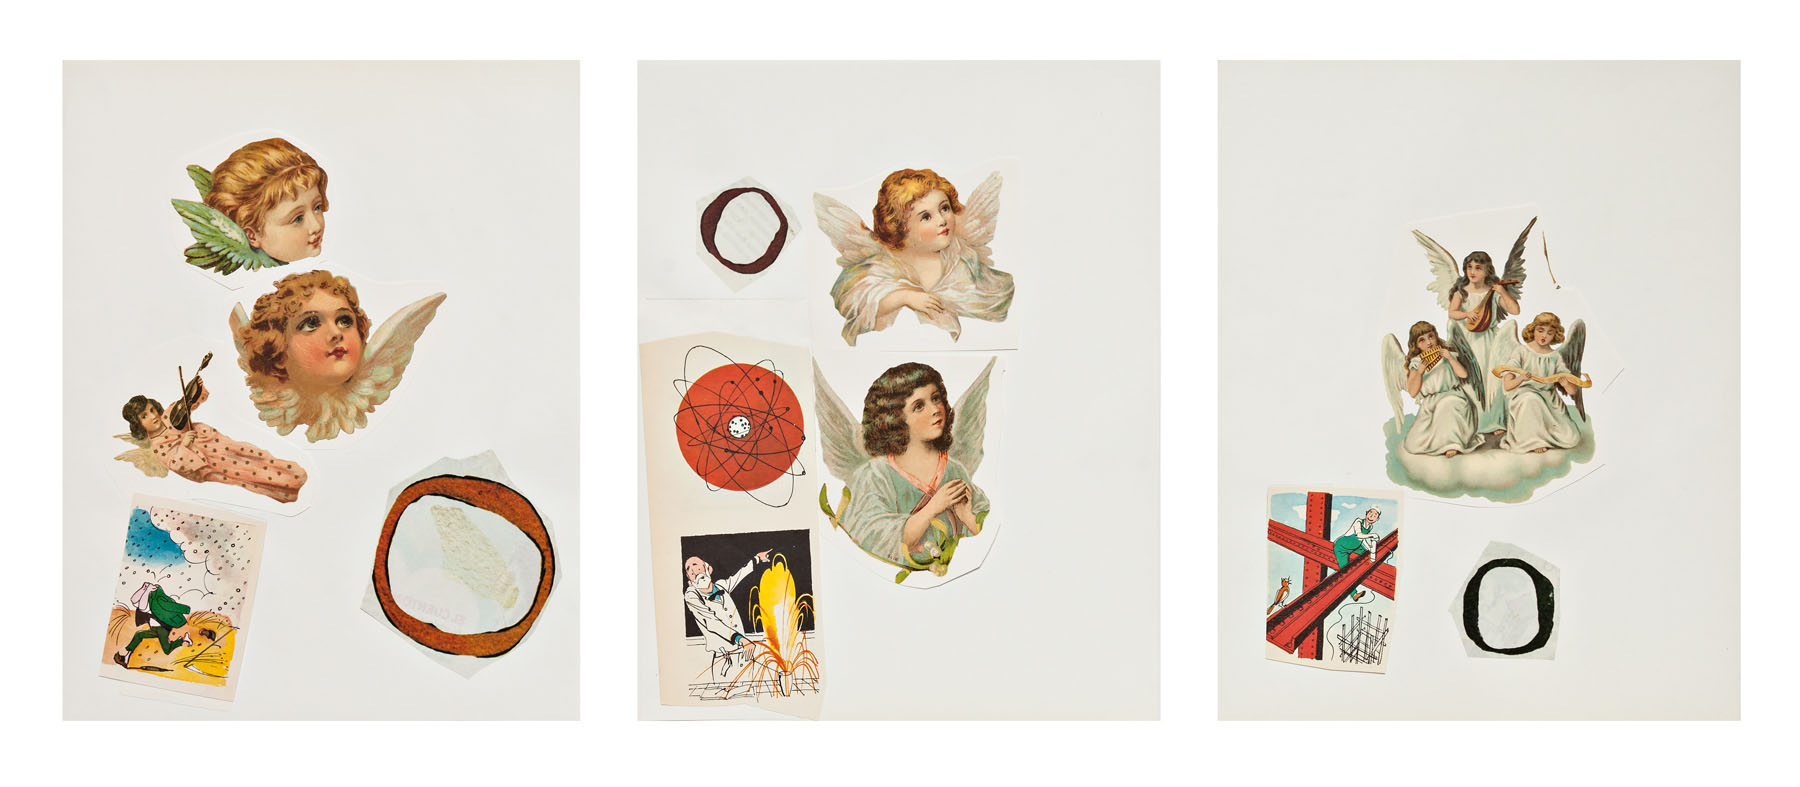 Serie Cuarentena, papel collage, 28 cm x 22 cm cada uno, 2020